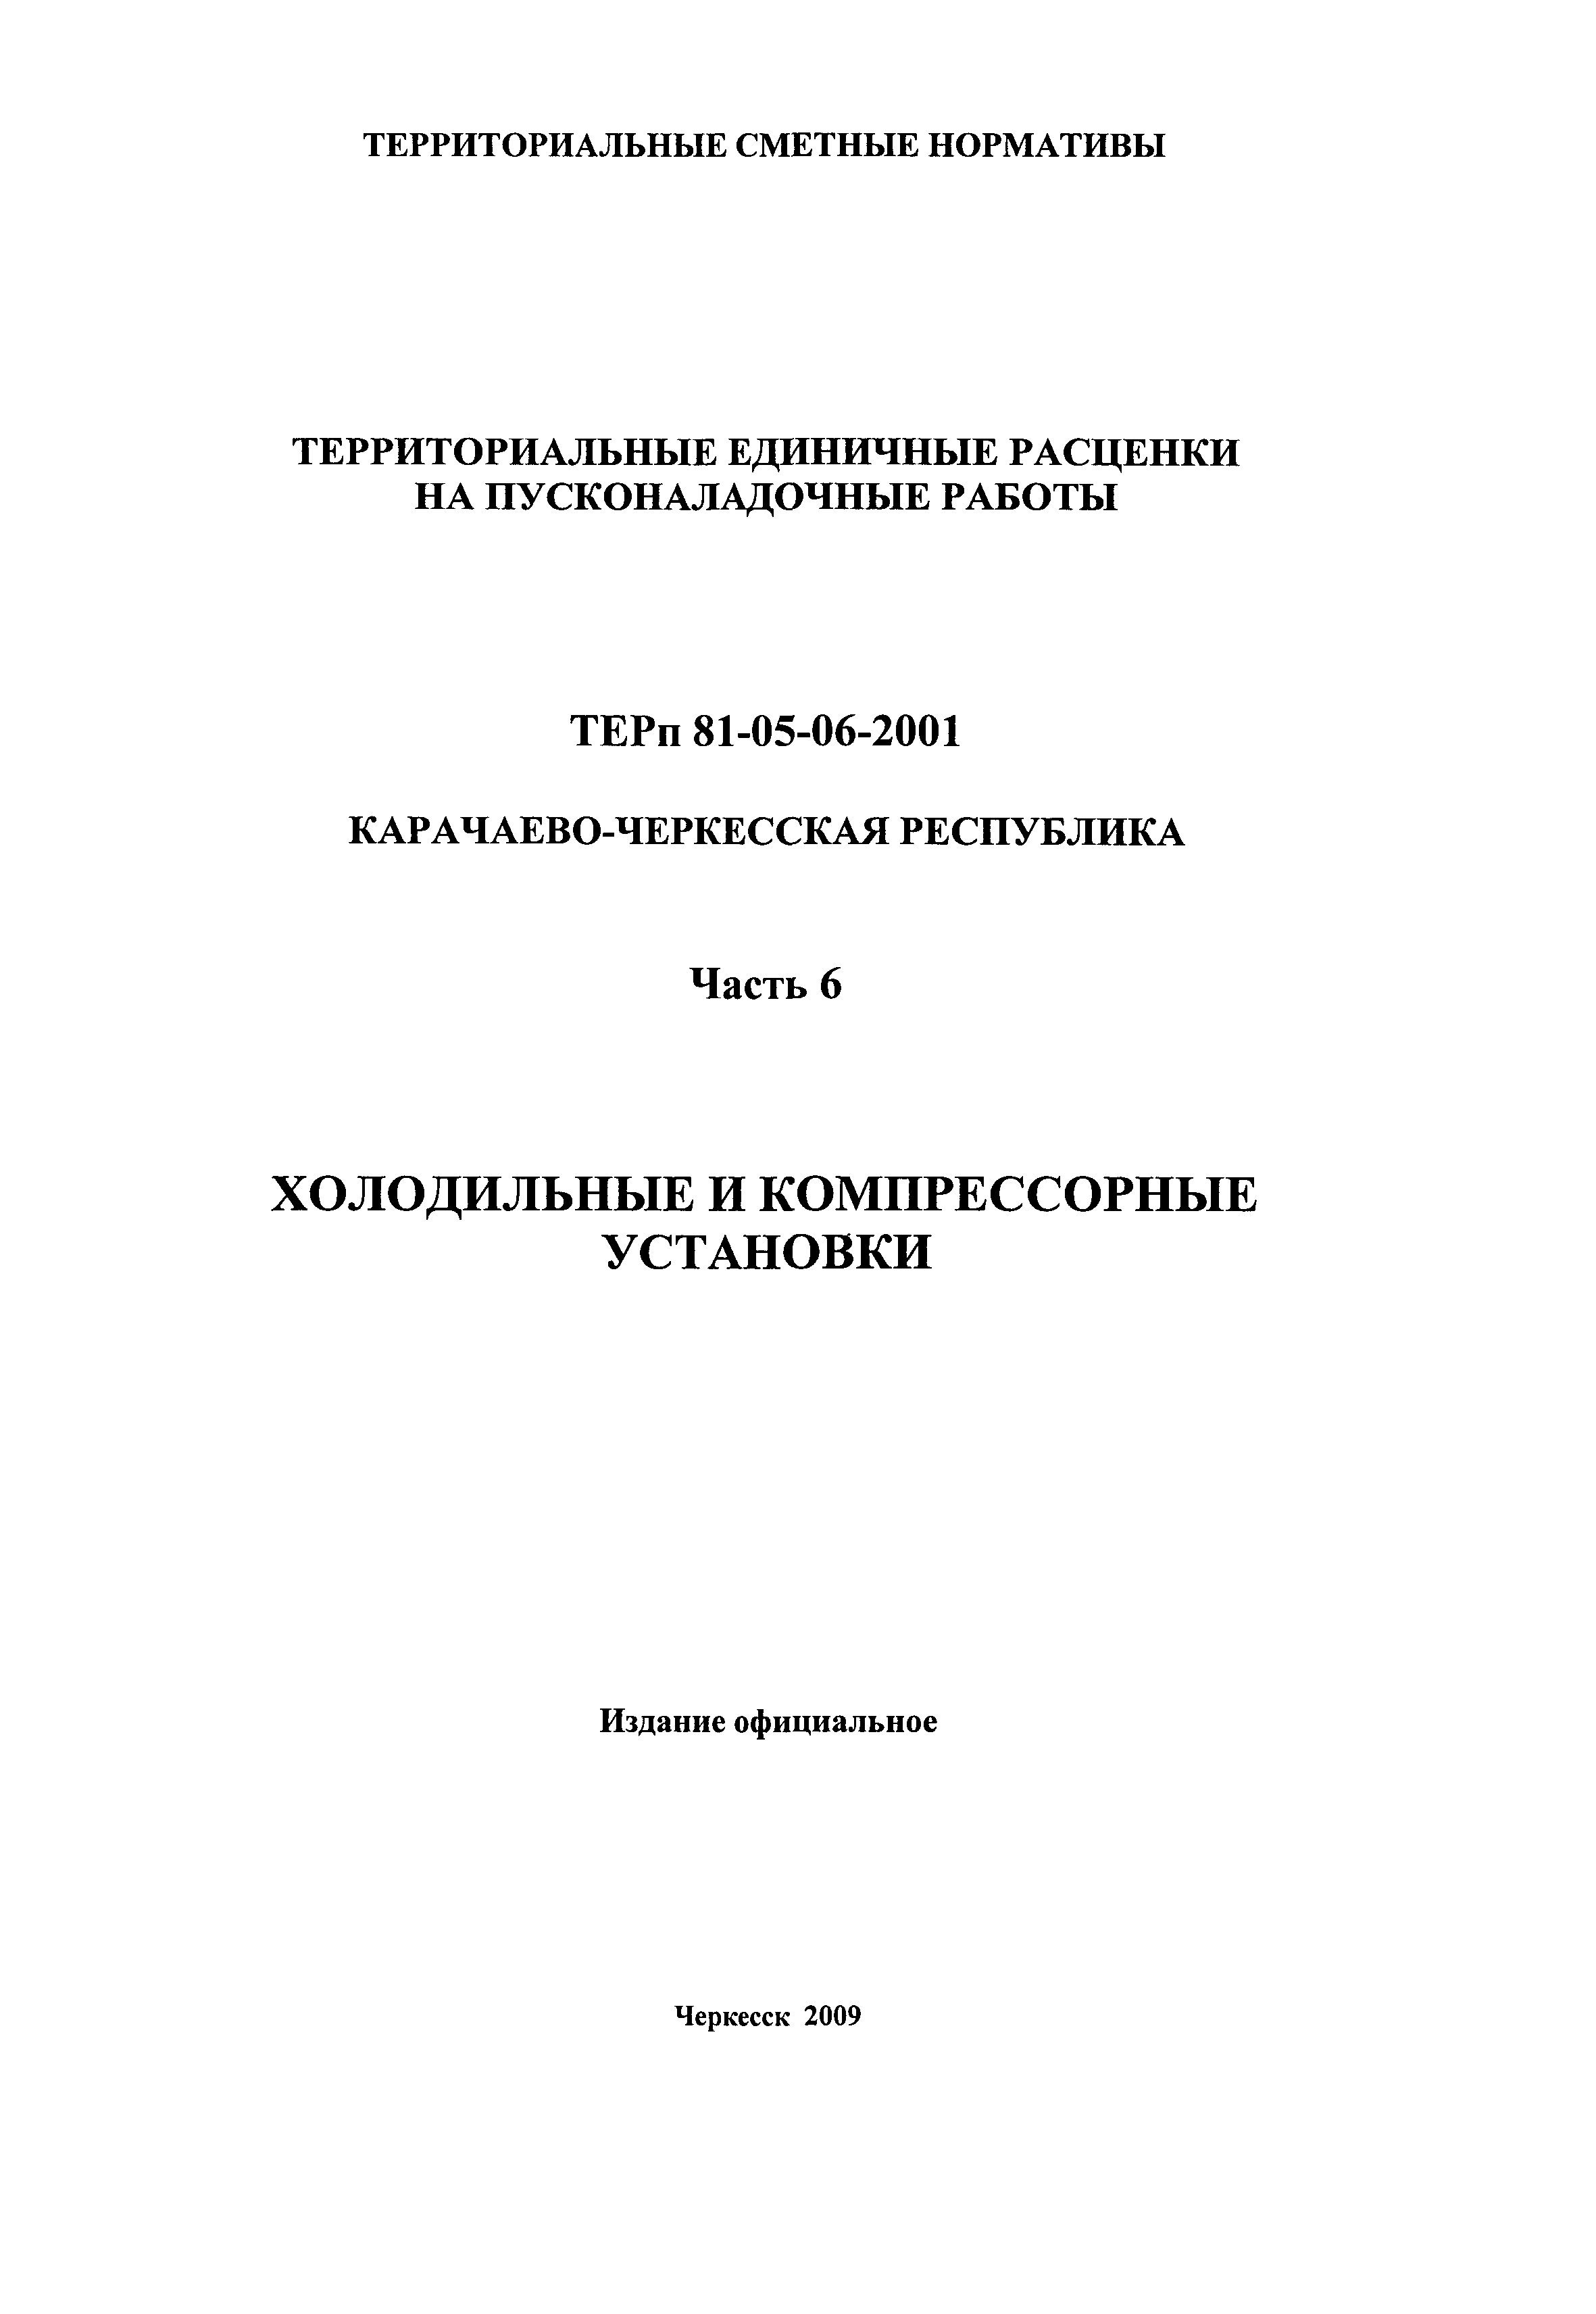 ТЕРп Карачаево-Черкесская Республика 06-2001